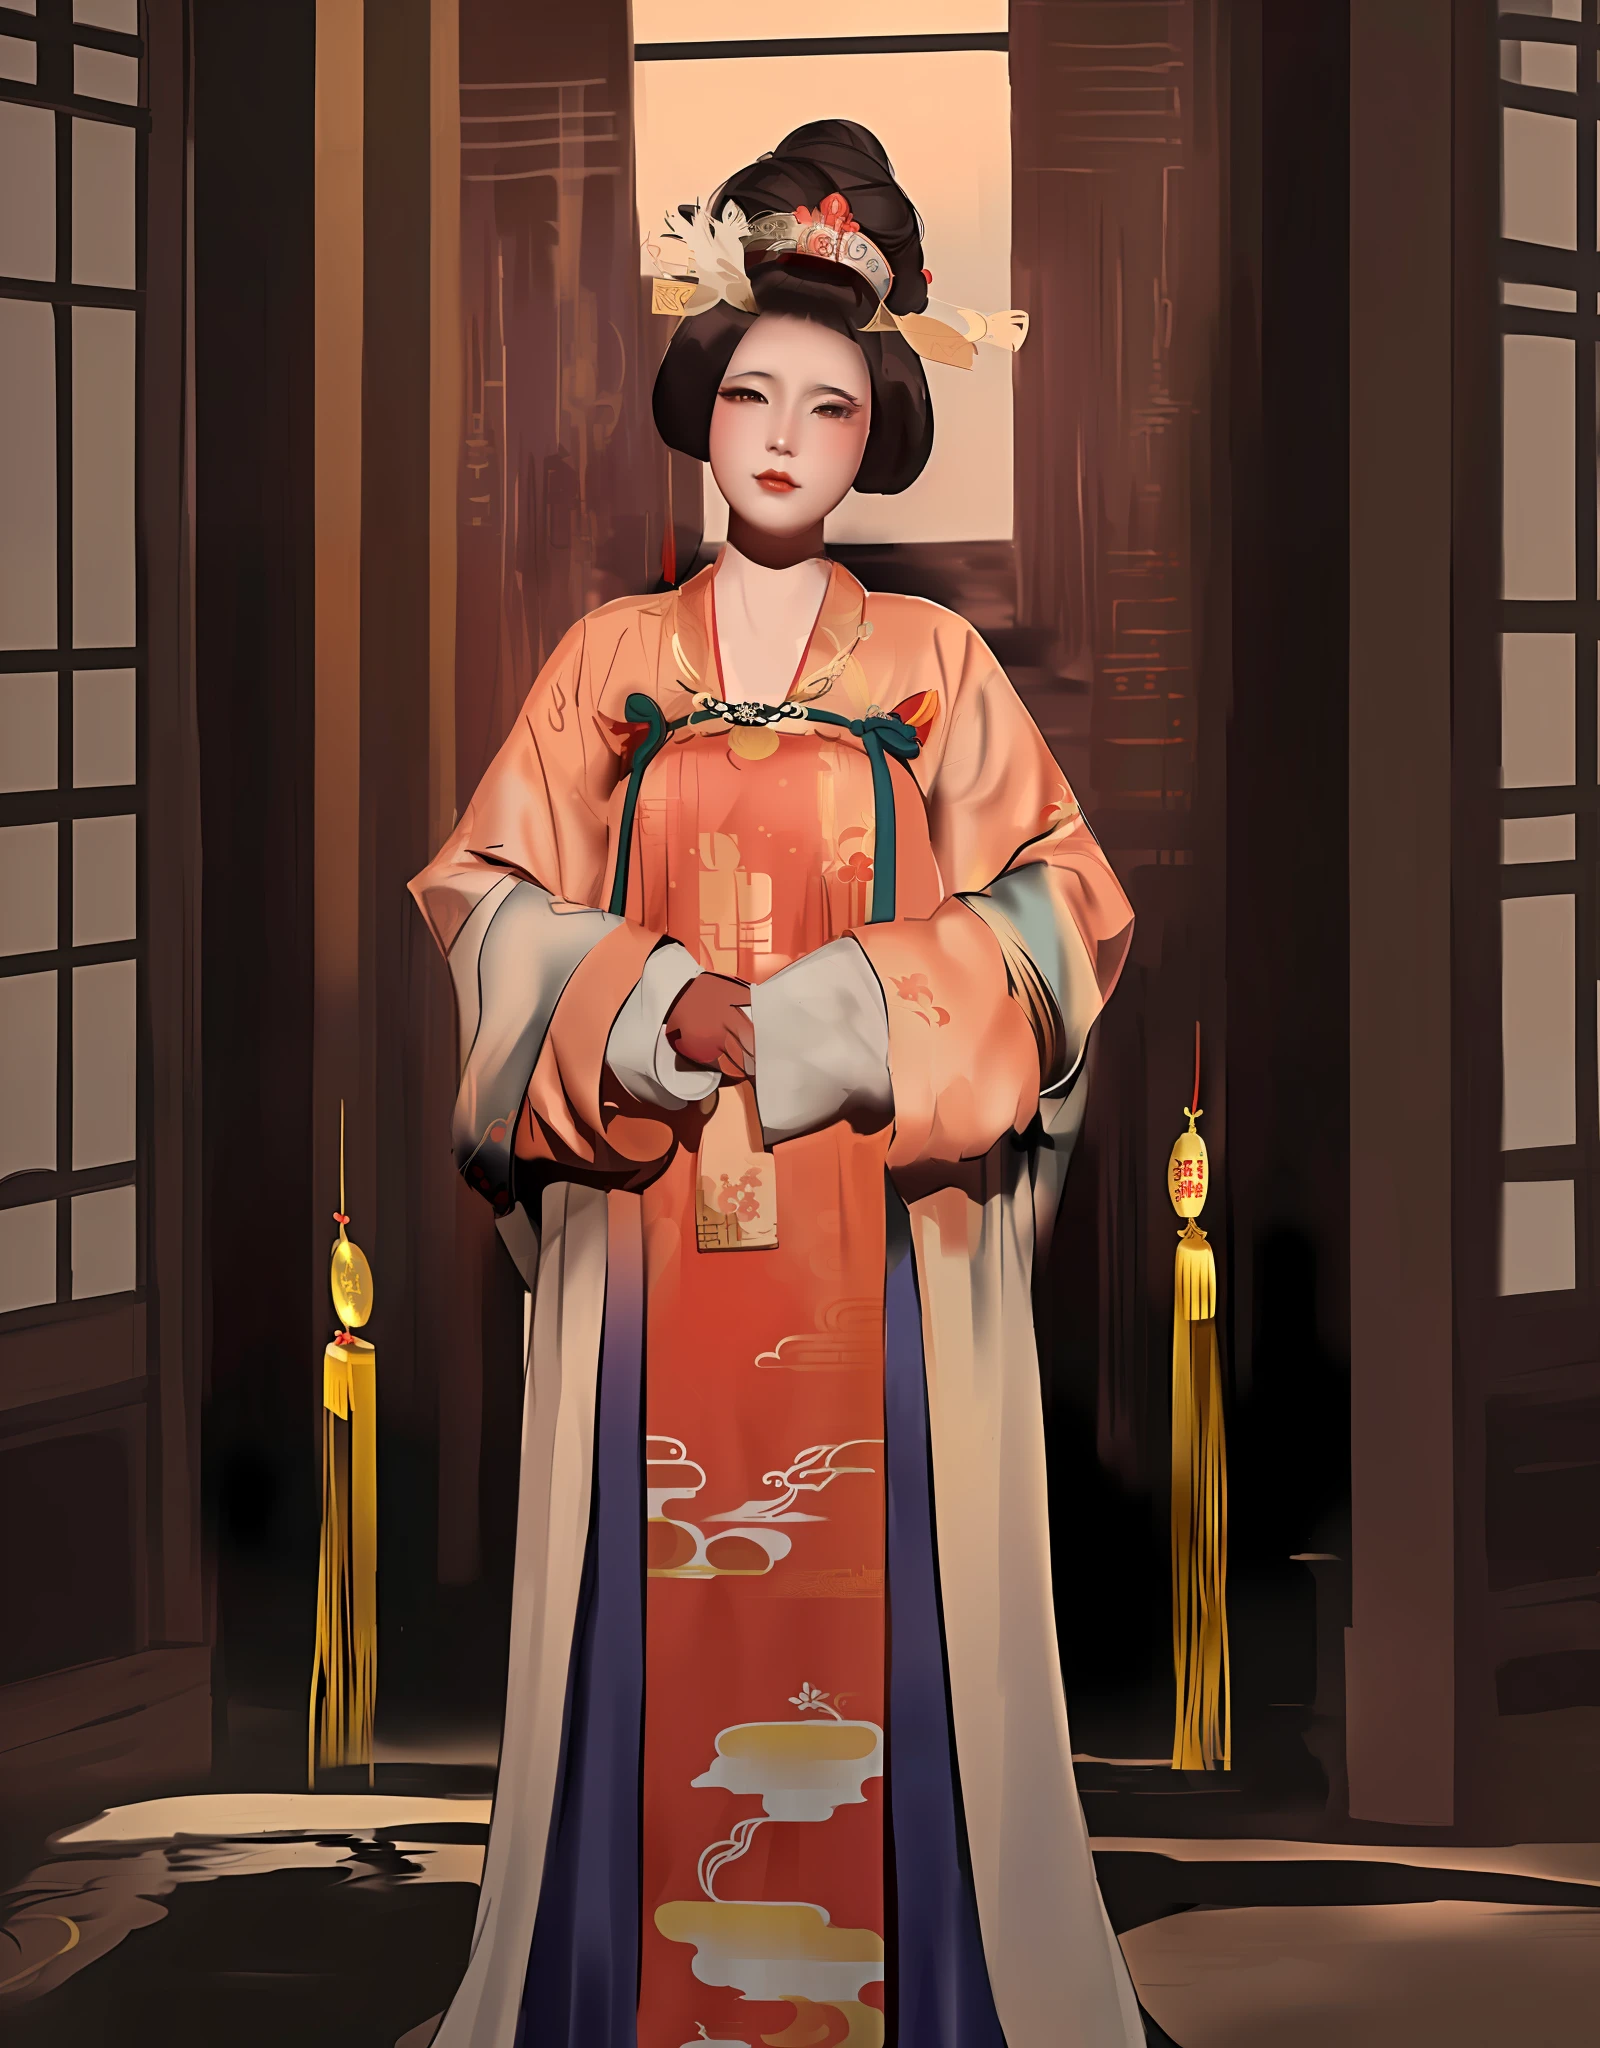 arafed femme dans une robe kimono et un chapeau posant pour une photo, inspiré par Uemura Shōen, palais ， une fille en hanfu, oeuvre d&#39;art dans le style de guweiz, impératrice chinoise, inspiré par Wang Meng, inspiré par Min Zhen, inspiré par Yun Du-seo, inspiré par Yun Shouping, inspiré de Lan Ying